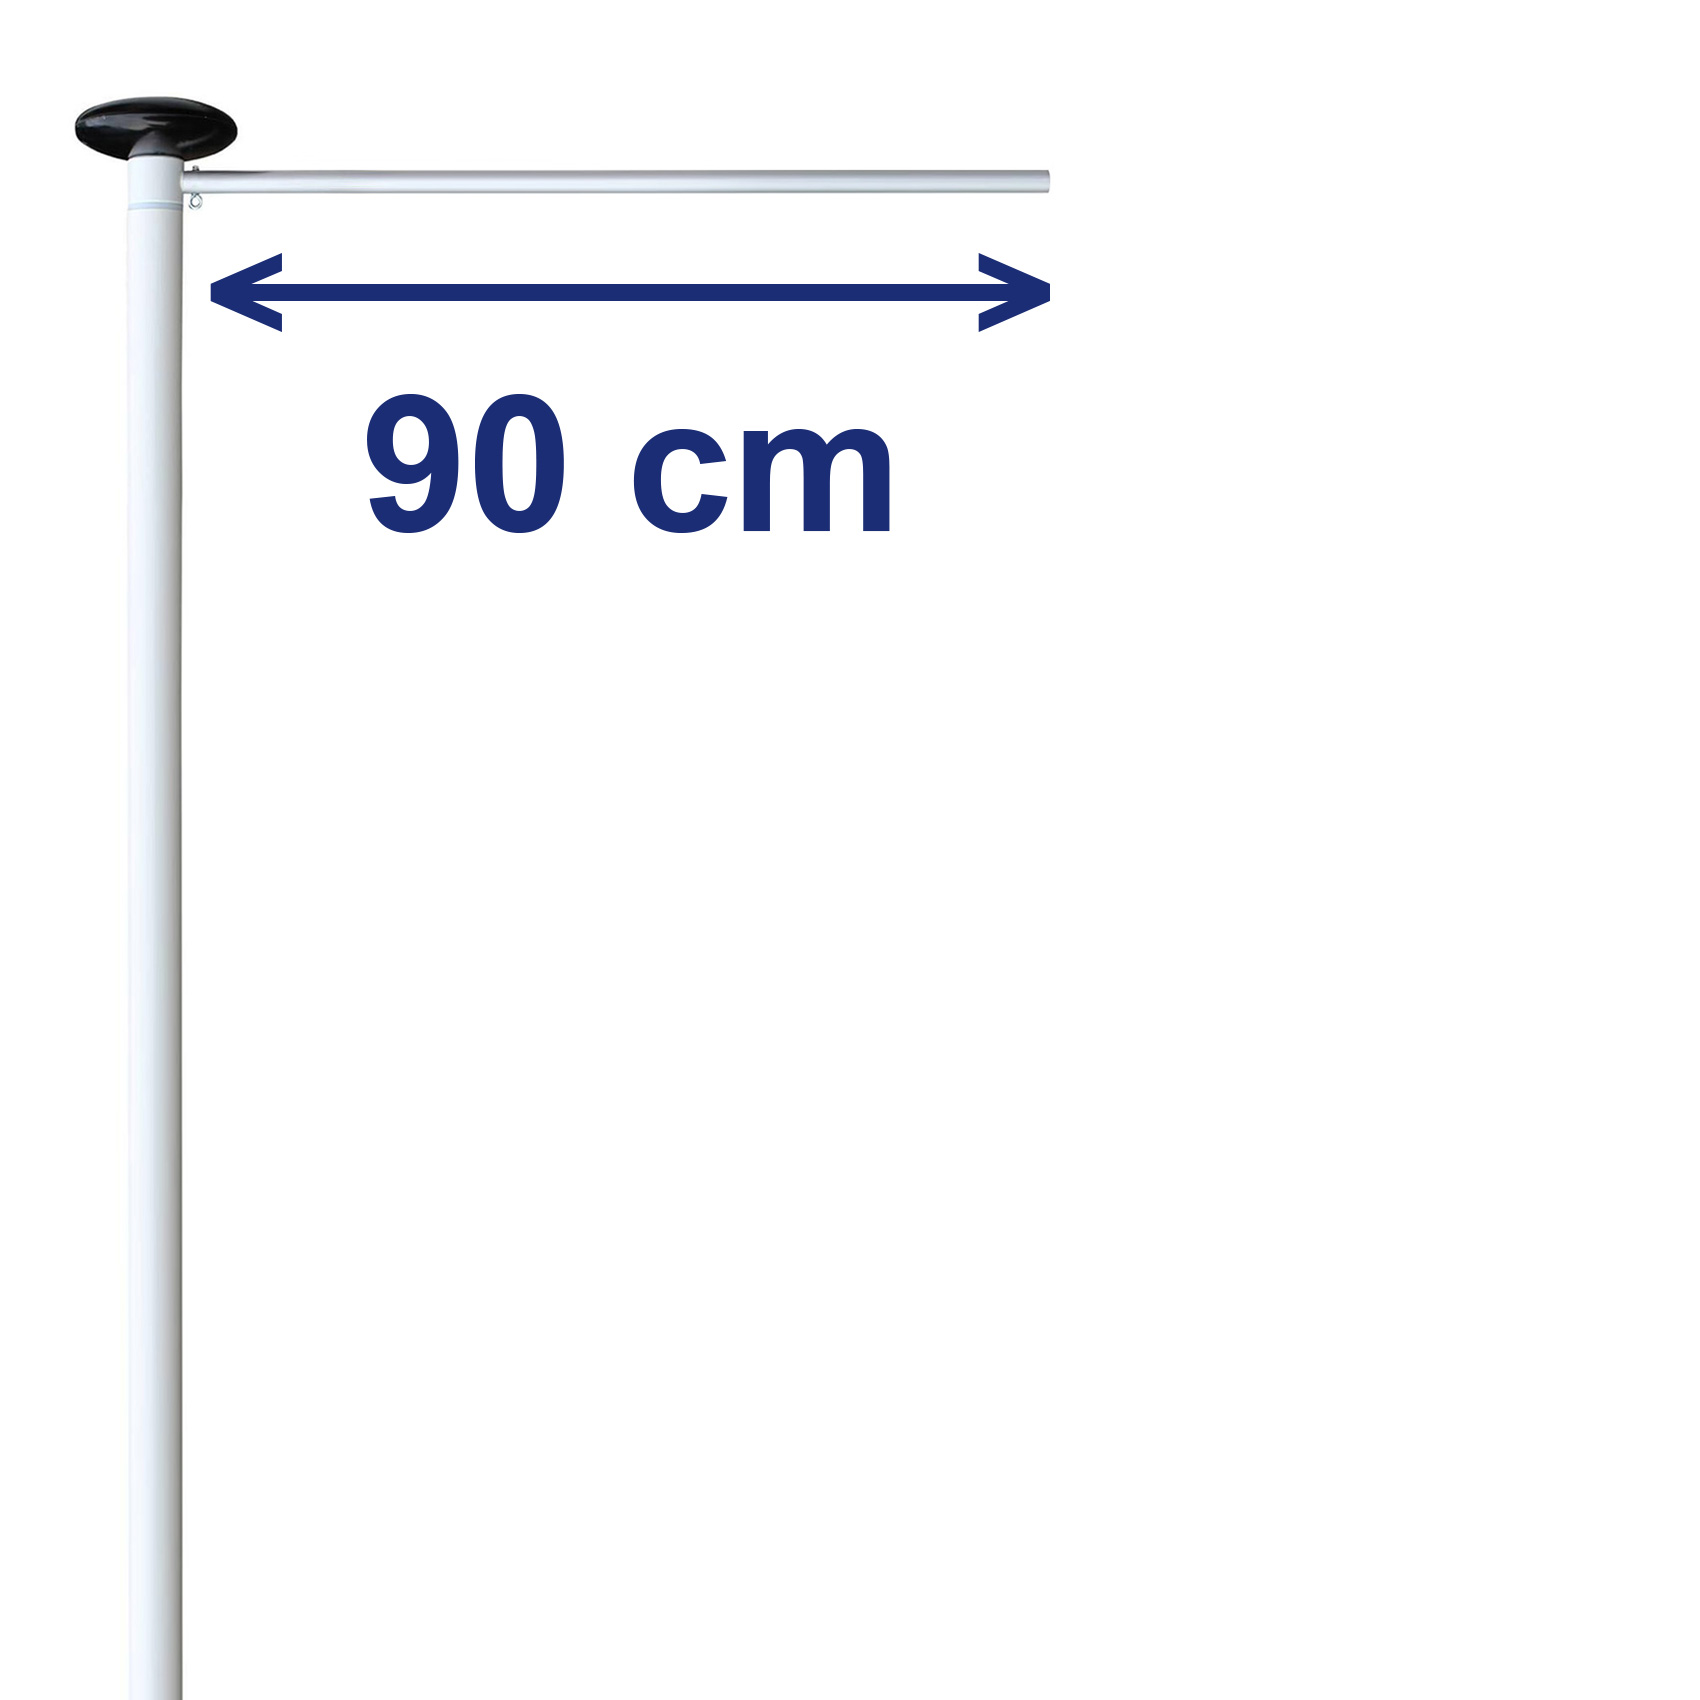 90 cm